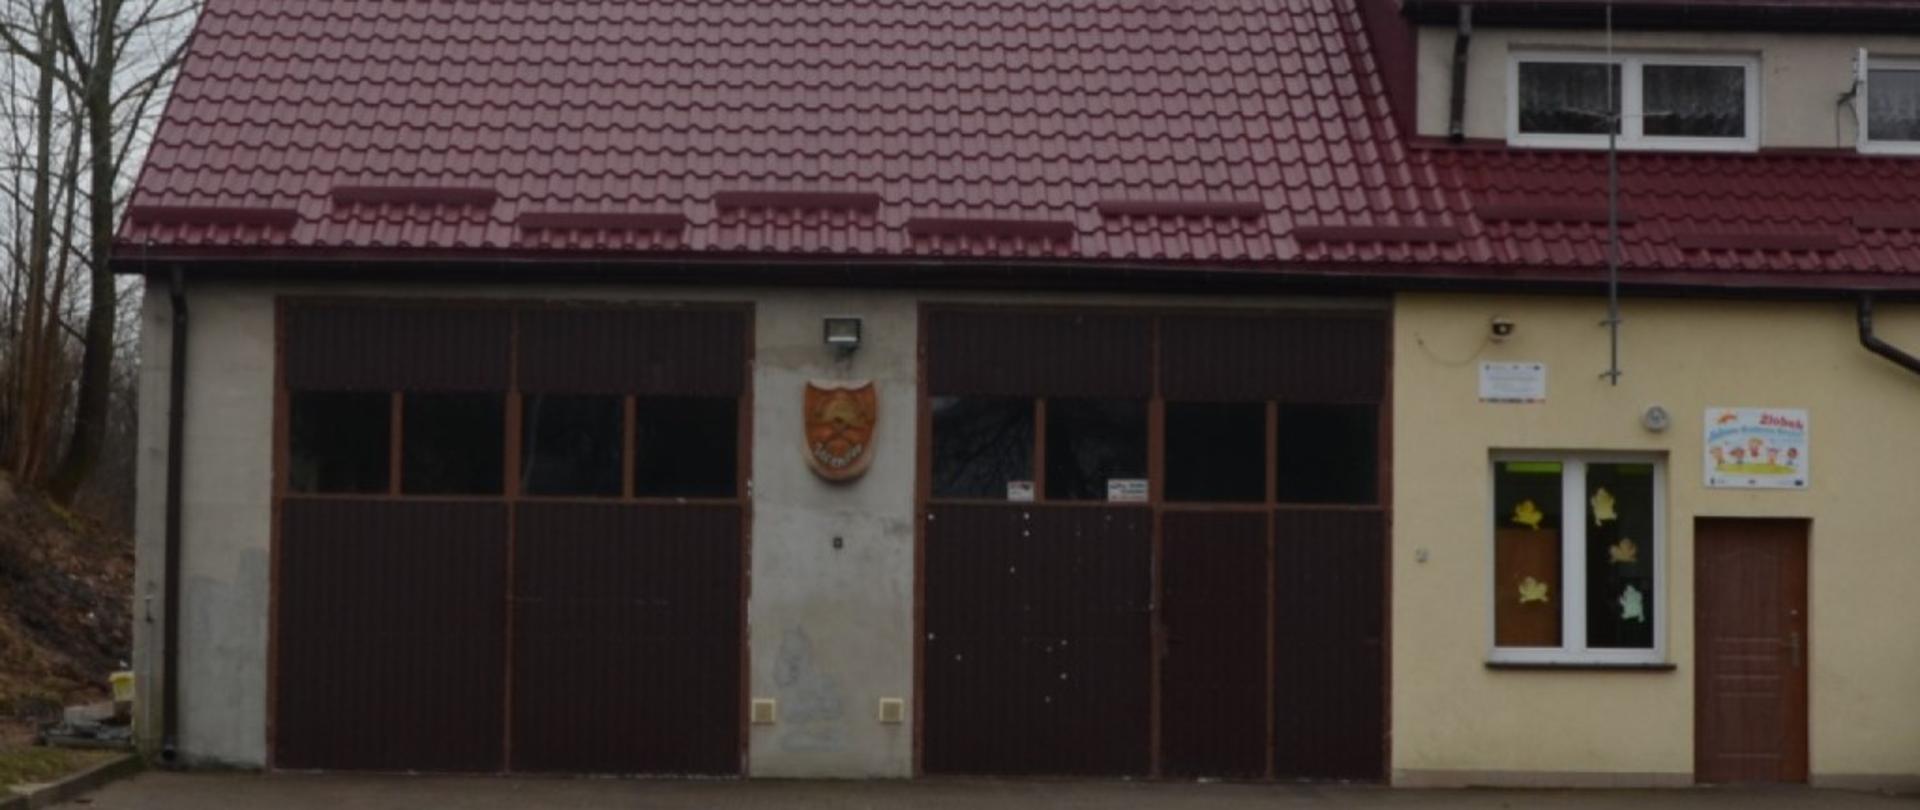 Widoczny jest budynek z dachem koloru czerwonego. Dwie bramy koloru brązowego. Po prawej stronie drzwi wejściowe do zaplecza socjalnego remizy. Przed budynkiem podjazd z kostki brukowej .